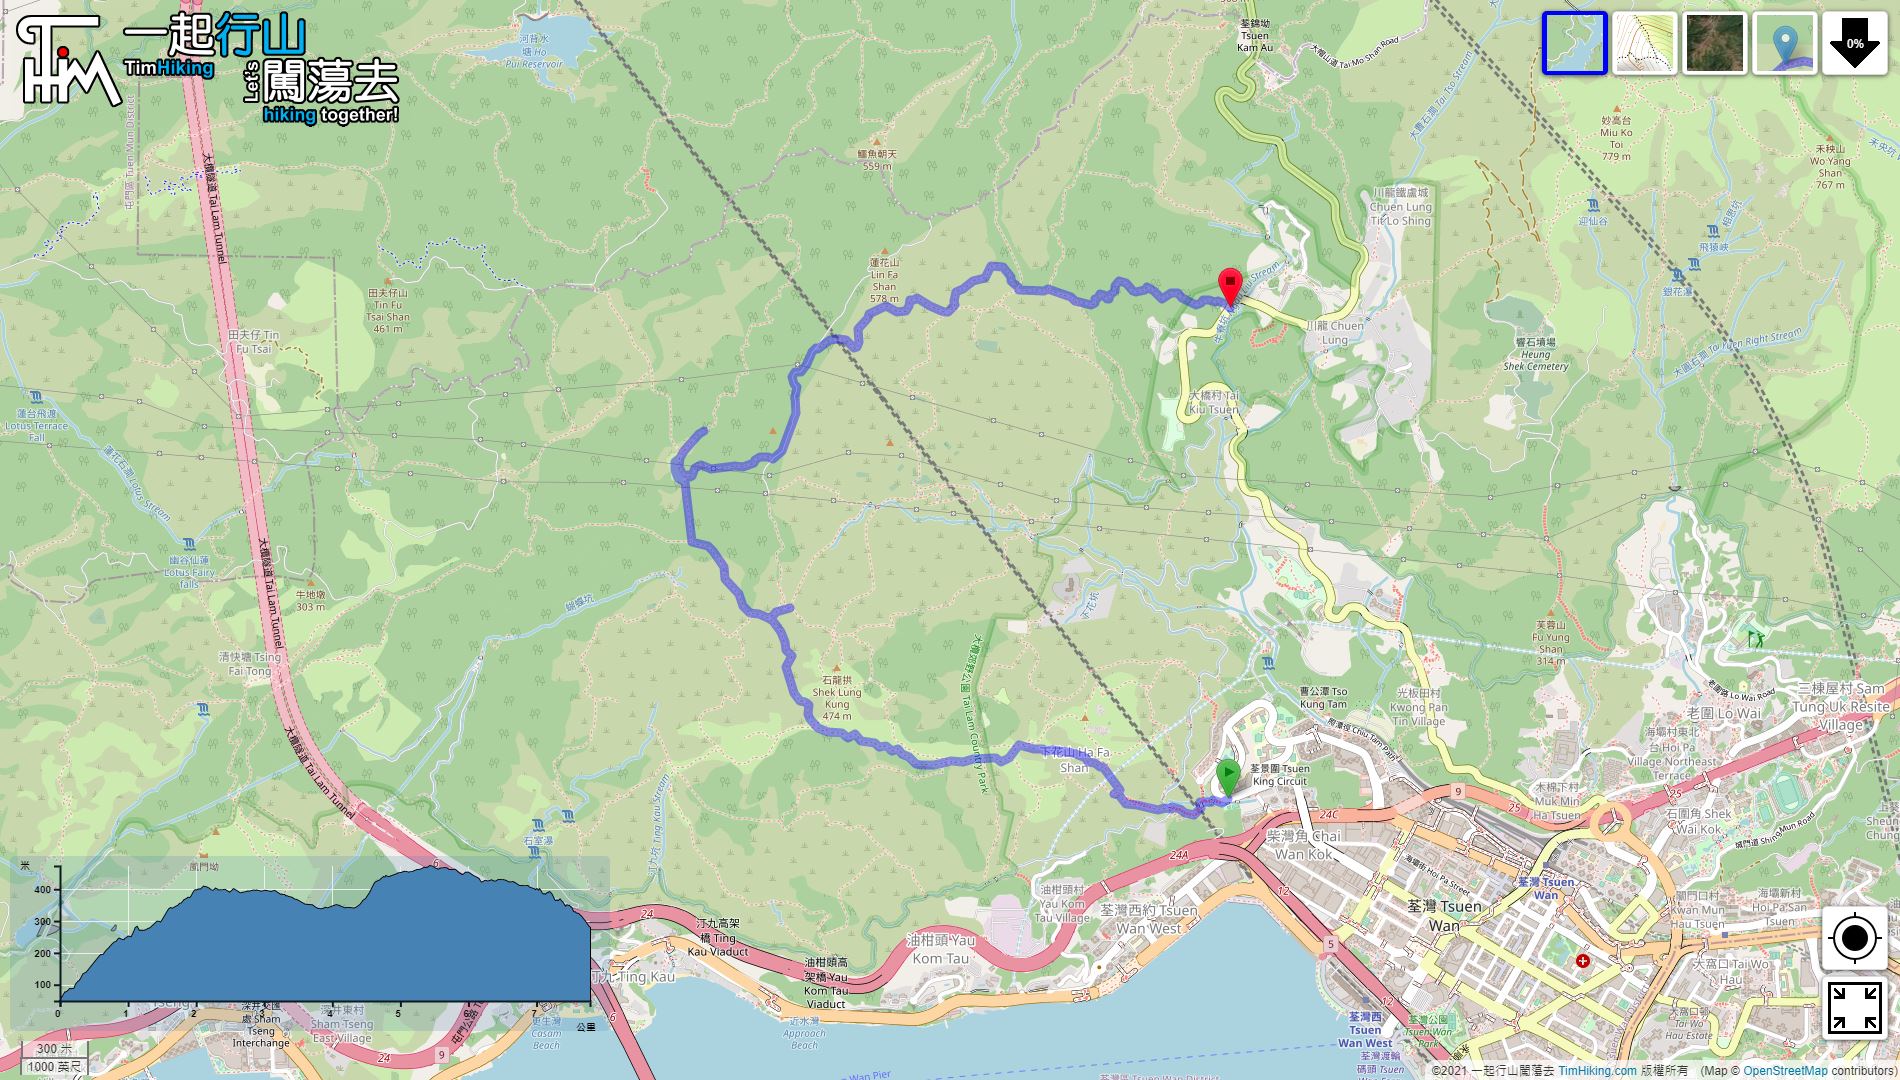 「Shek Lung Kung, Sheung Tong, Pak Shek Kiu」路線Map